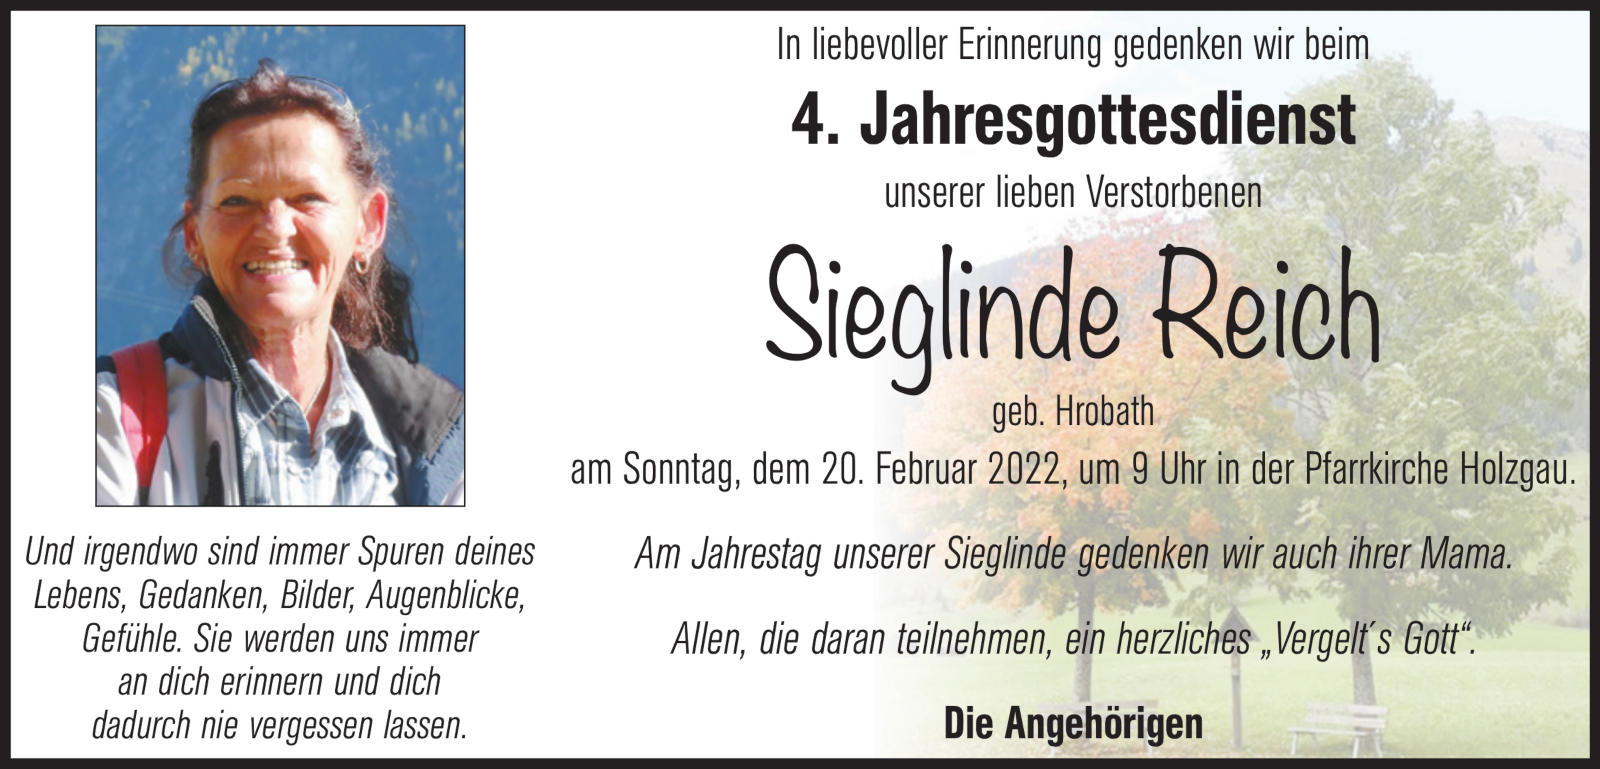 Sieglinde Reich, 20.02.2022 um 9.00 Uhr in der Pfarrkirche Holzgau